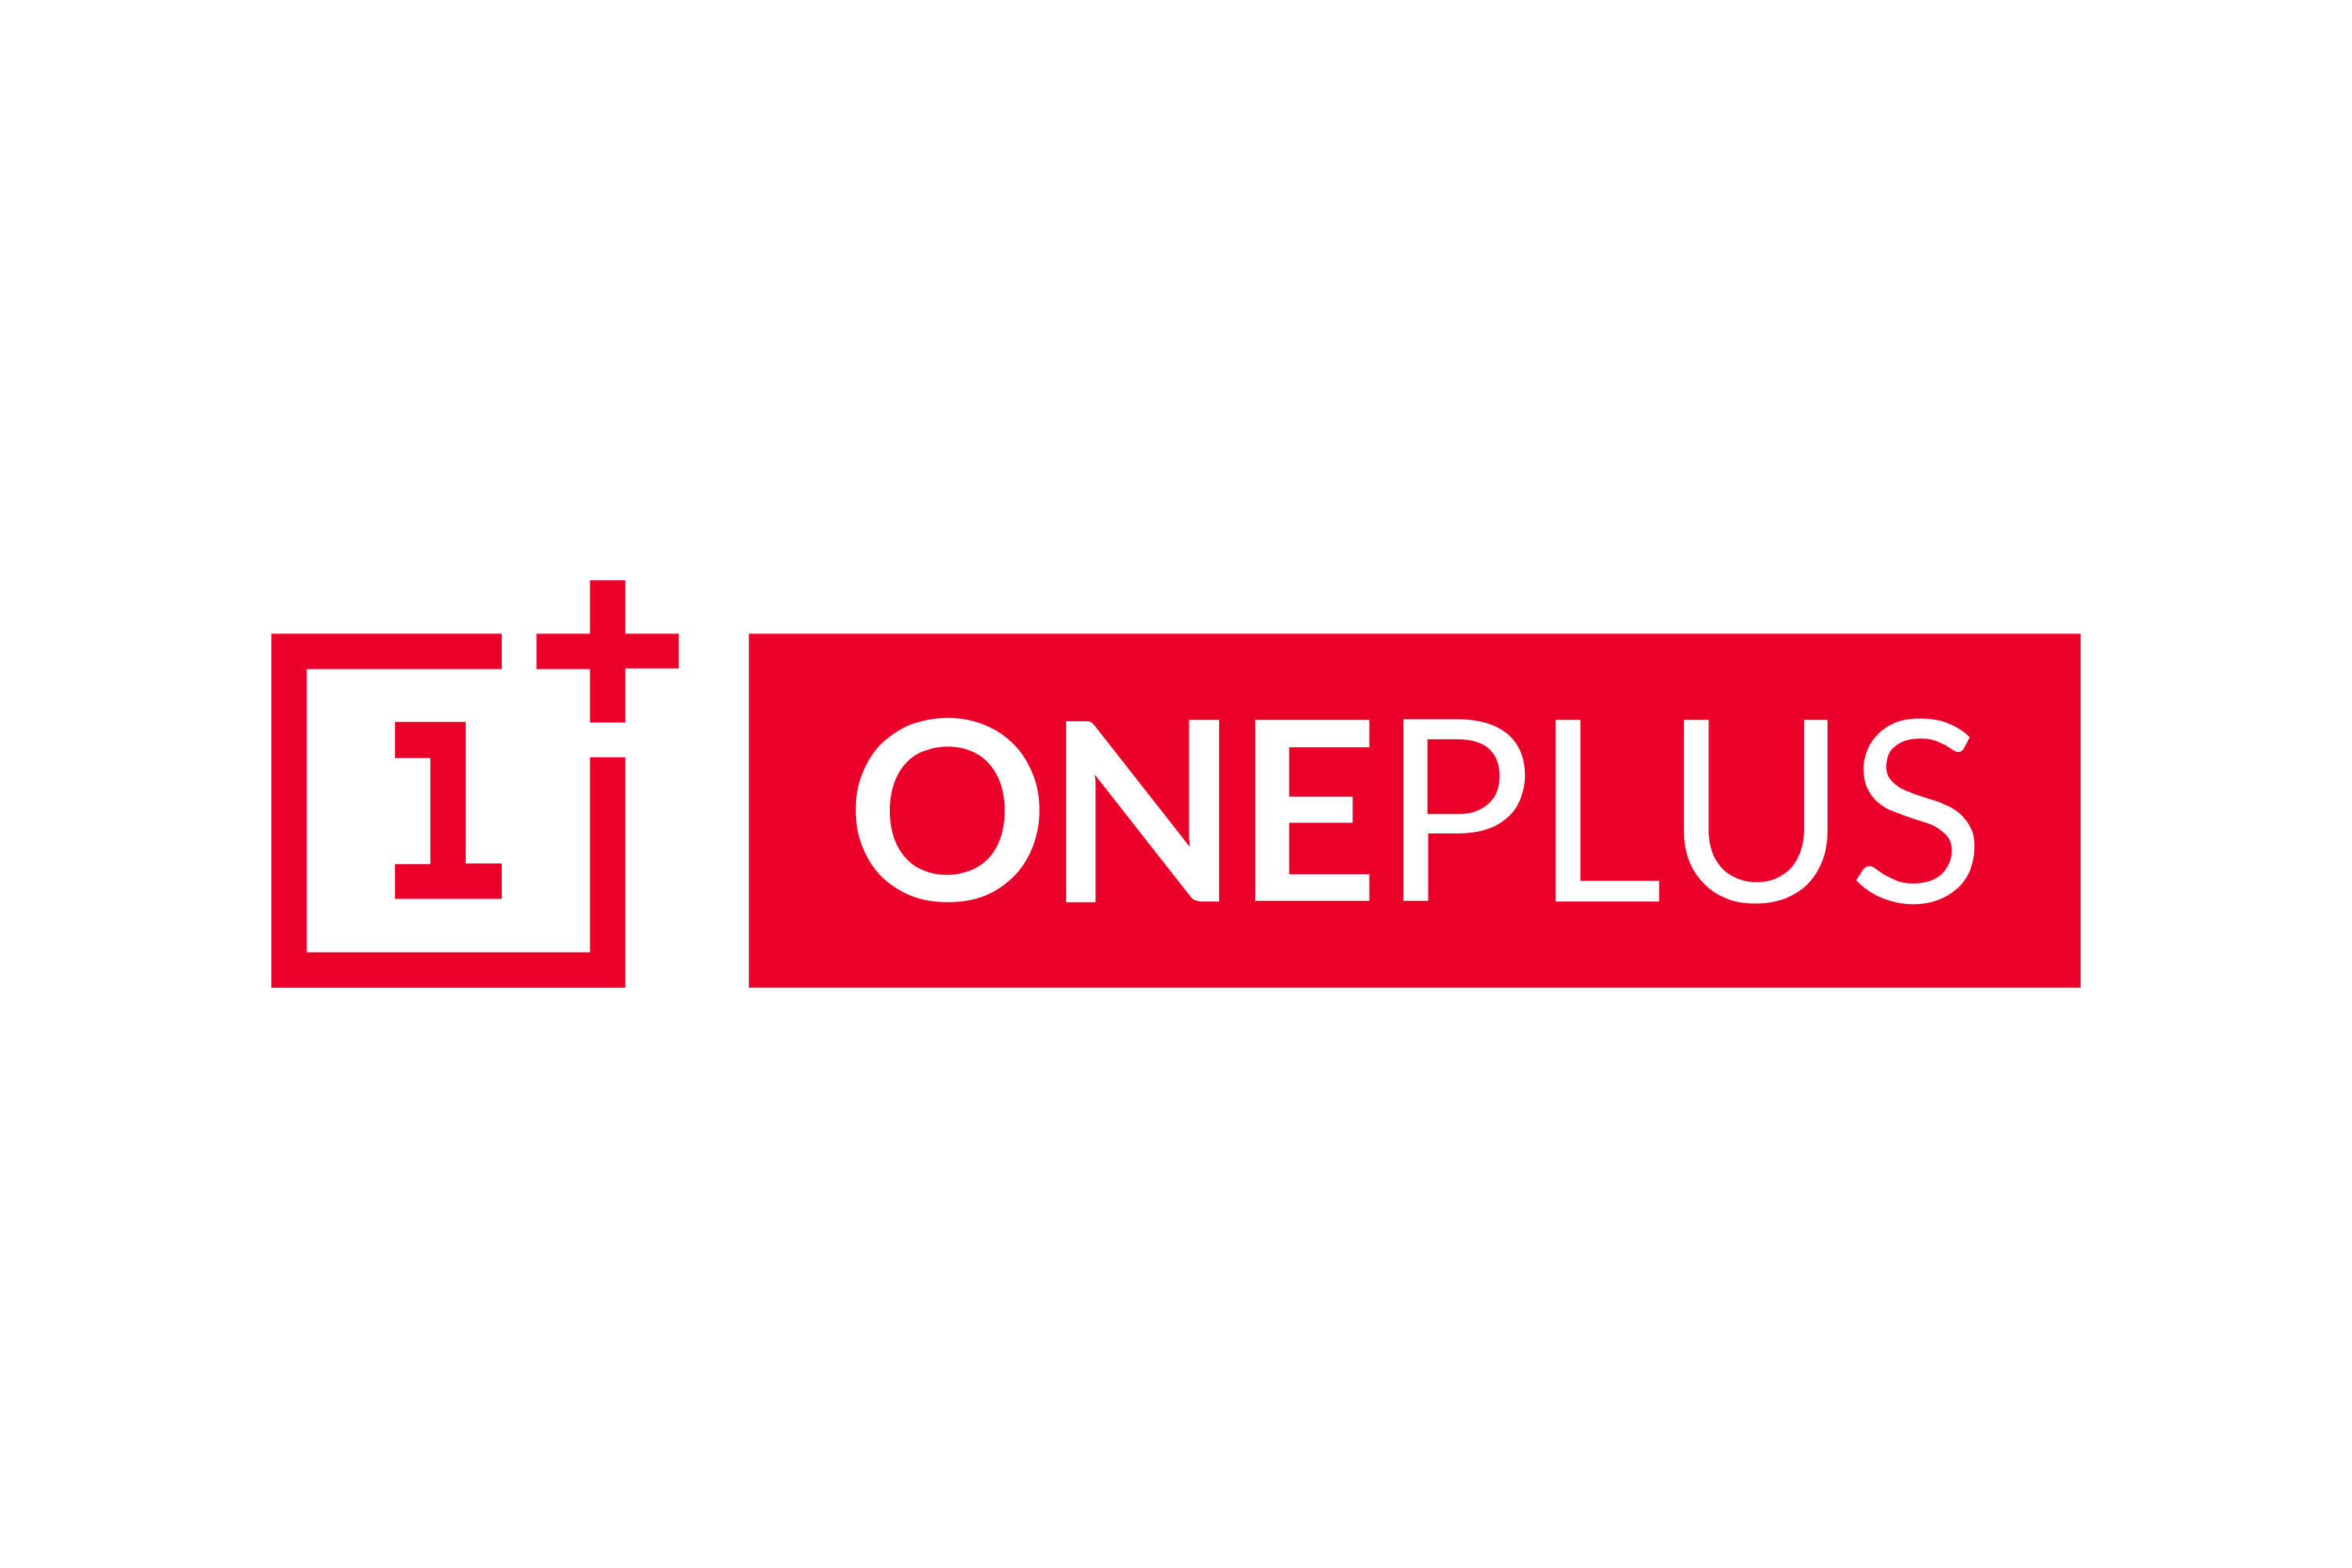 One Plus Logo